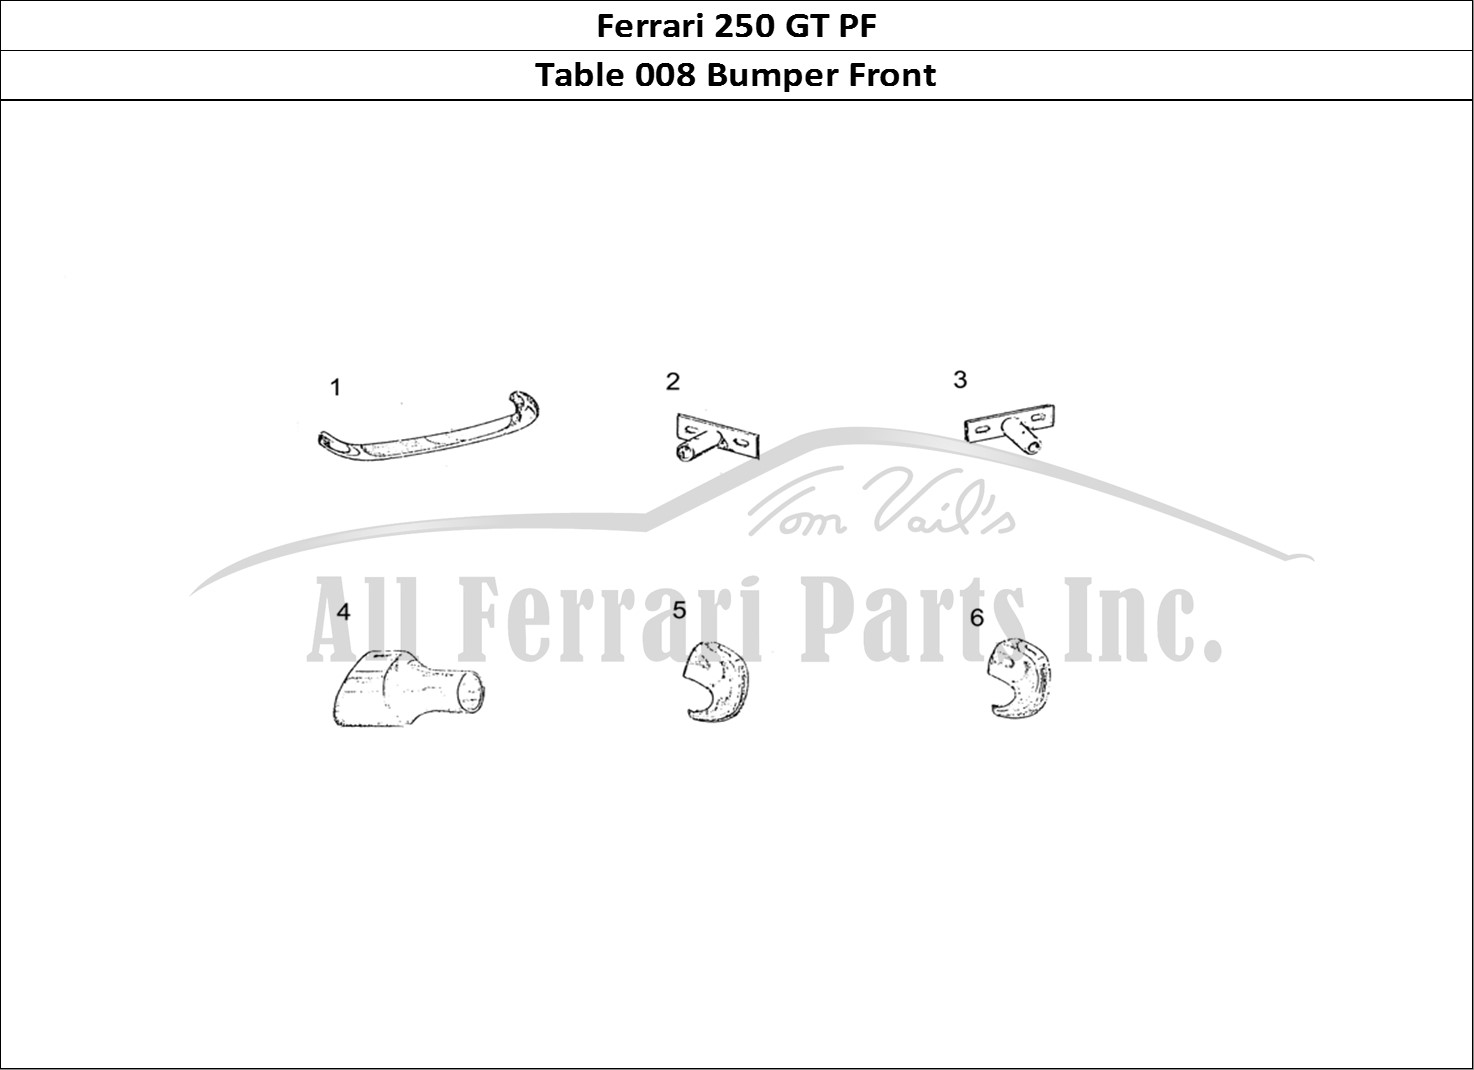 Ferrari Parts Ferrari 250 GT (Coachwork) Page 008 Bumper Front